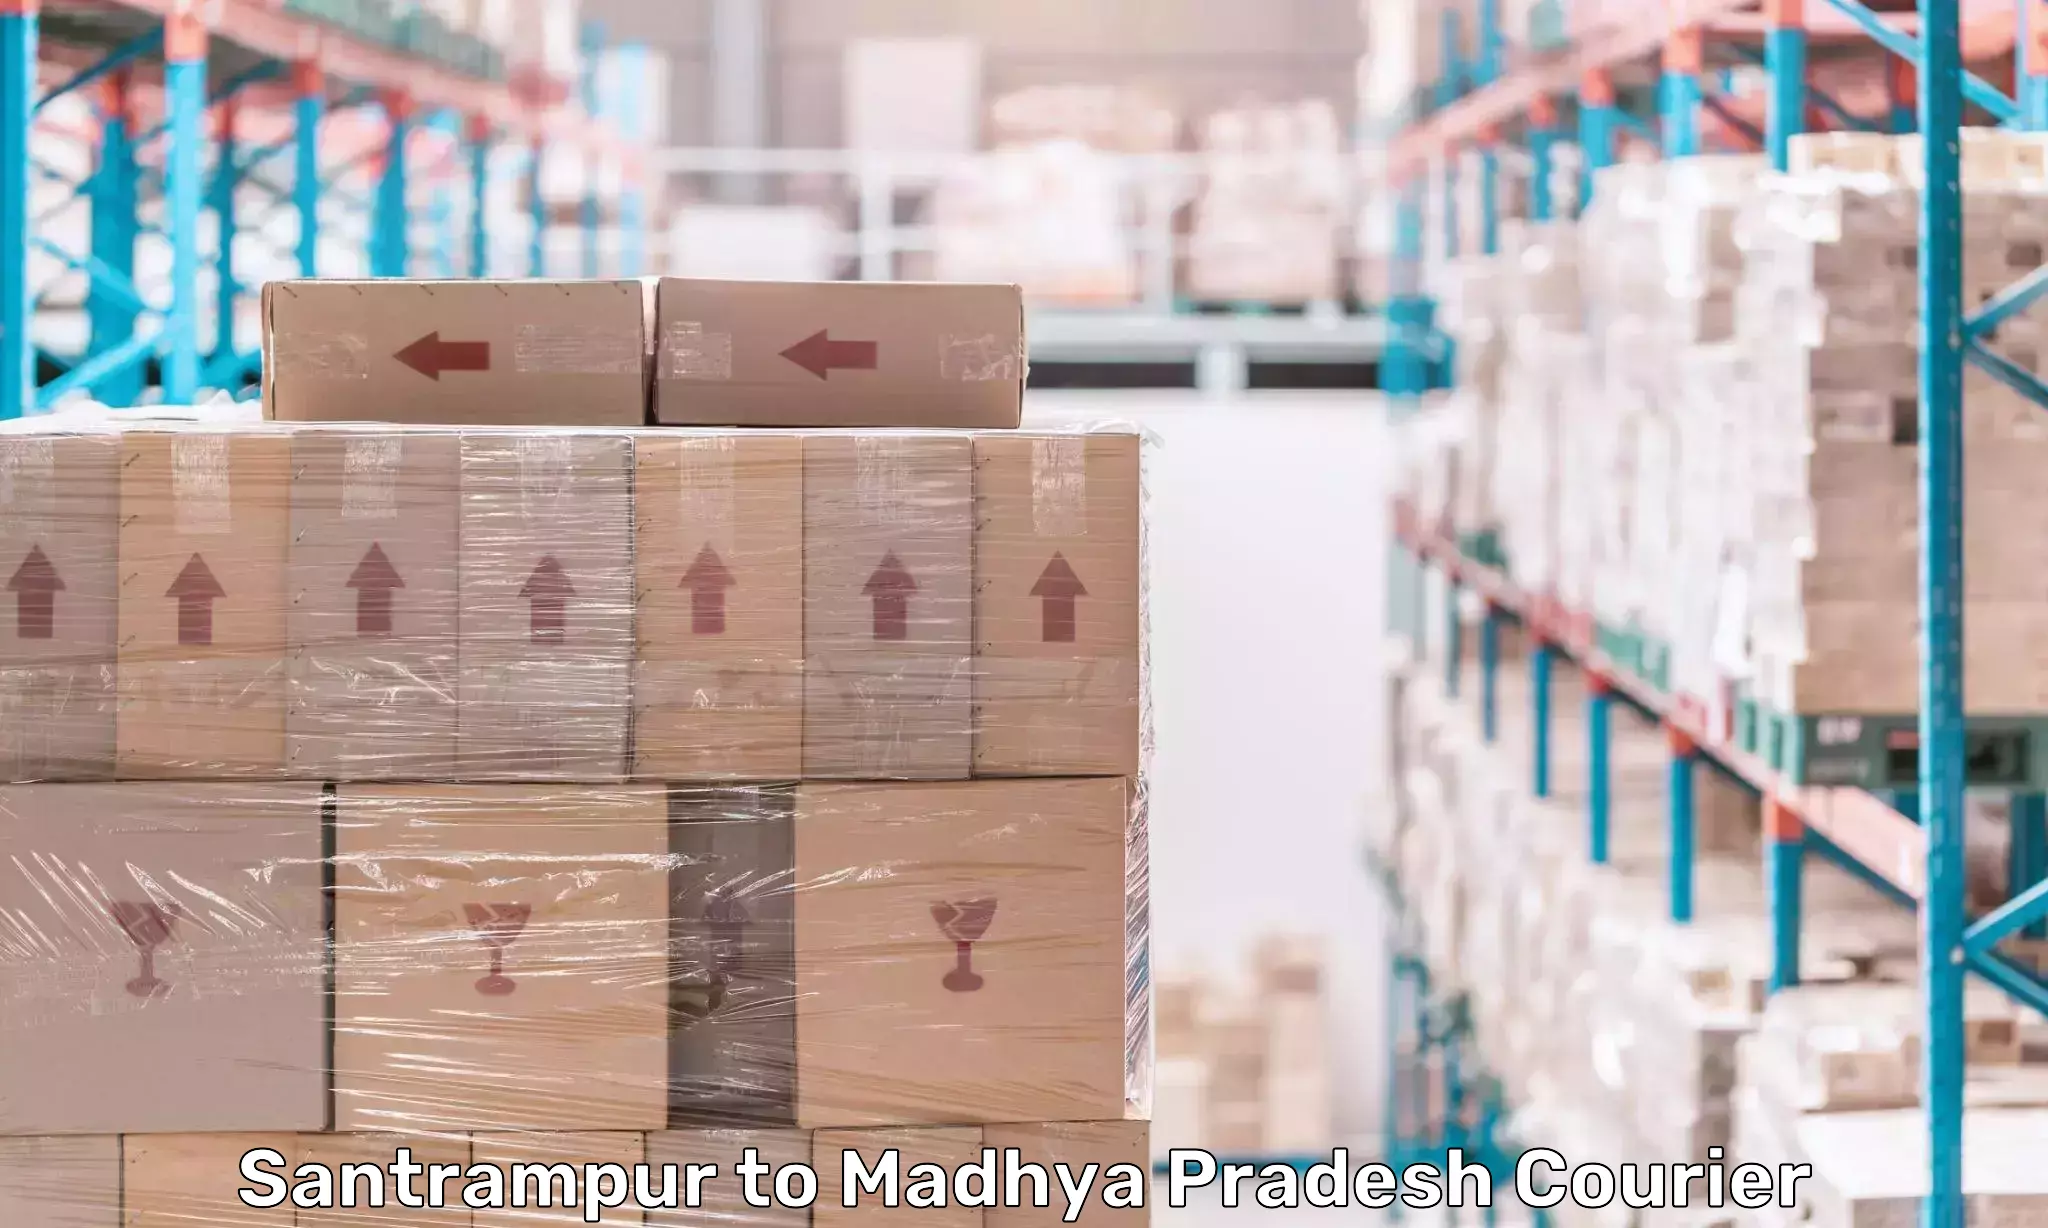 Cargo delivery service Santrampur to Mandsaur